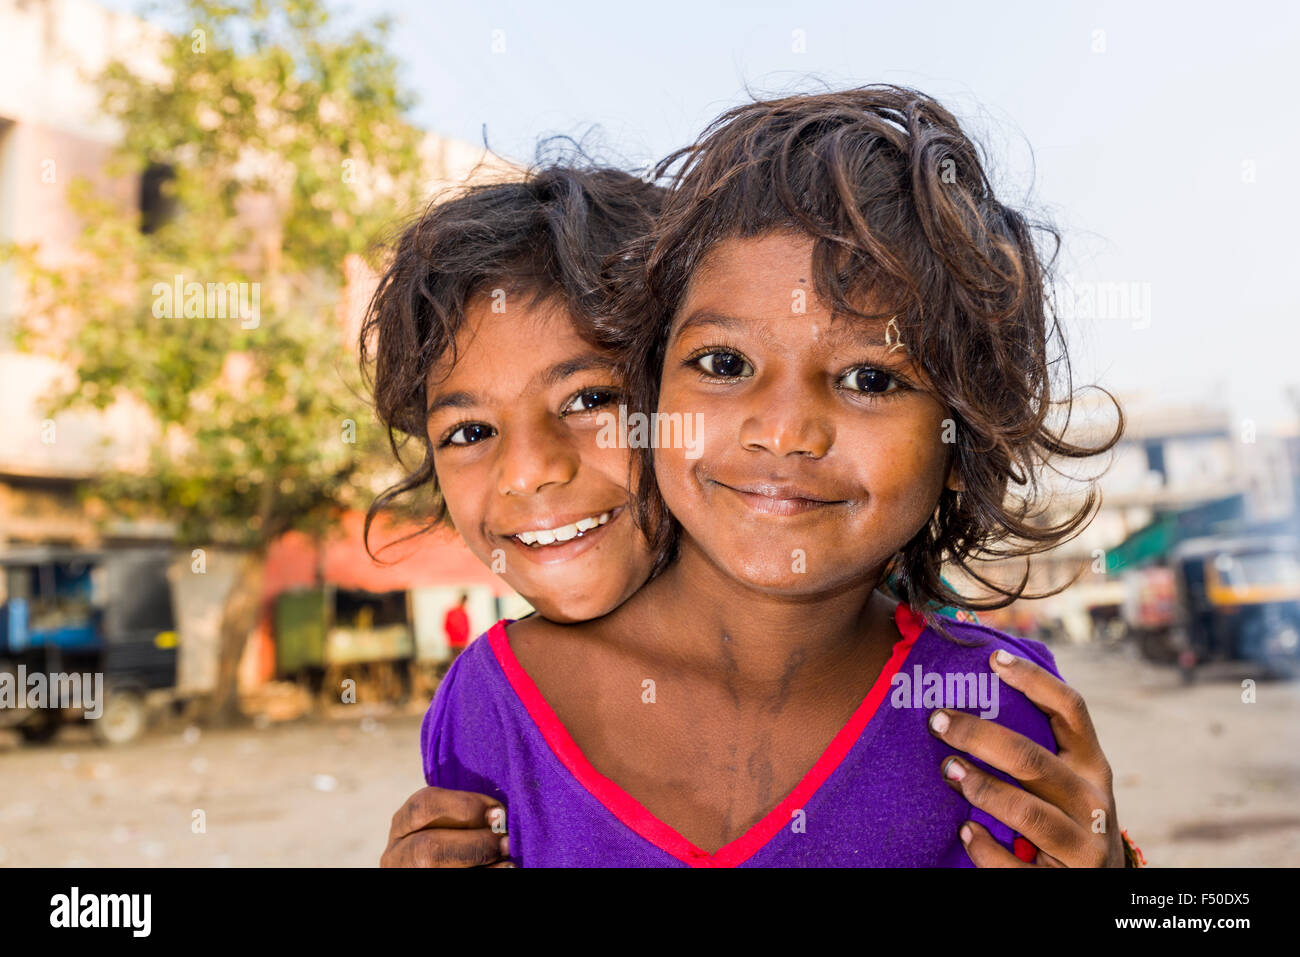 Portraits de deux enfants des rues, enfants souriants, qui vivent juste à côté de routes très fréquentées sur la chaussée Banque D'Images